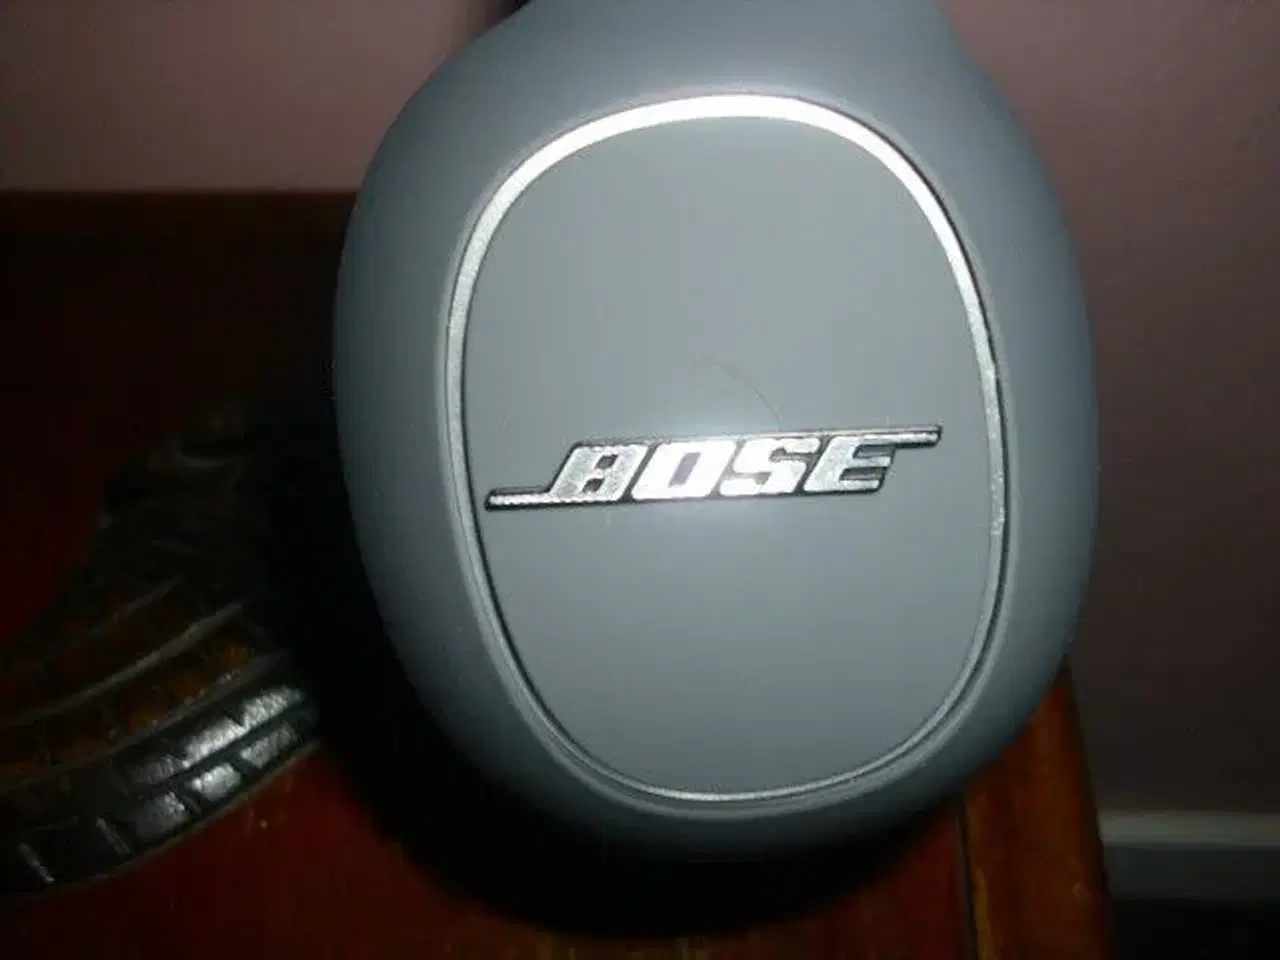 Billede 2 - hovedtelefoner  Bose  nye aldrig brugt